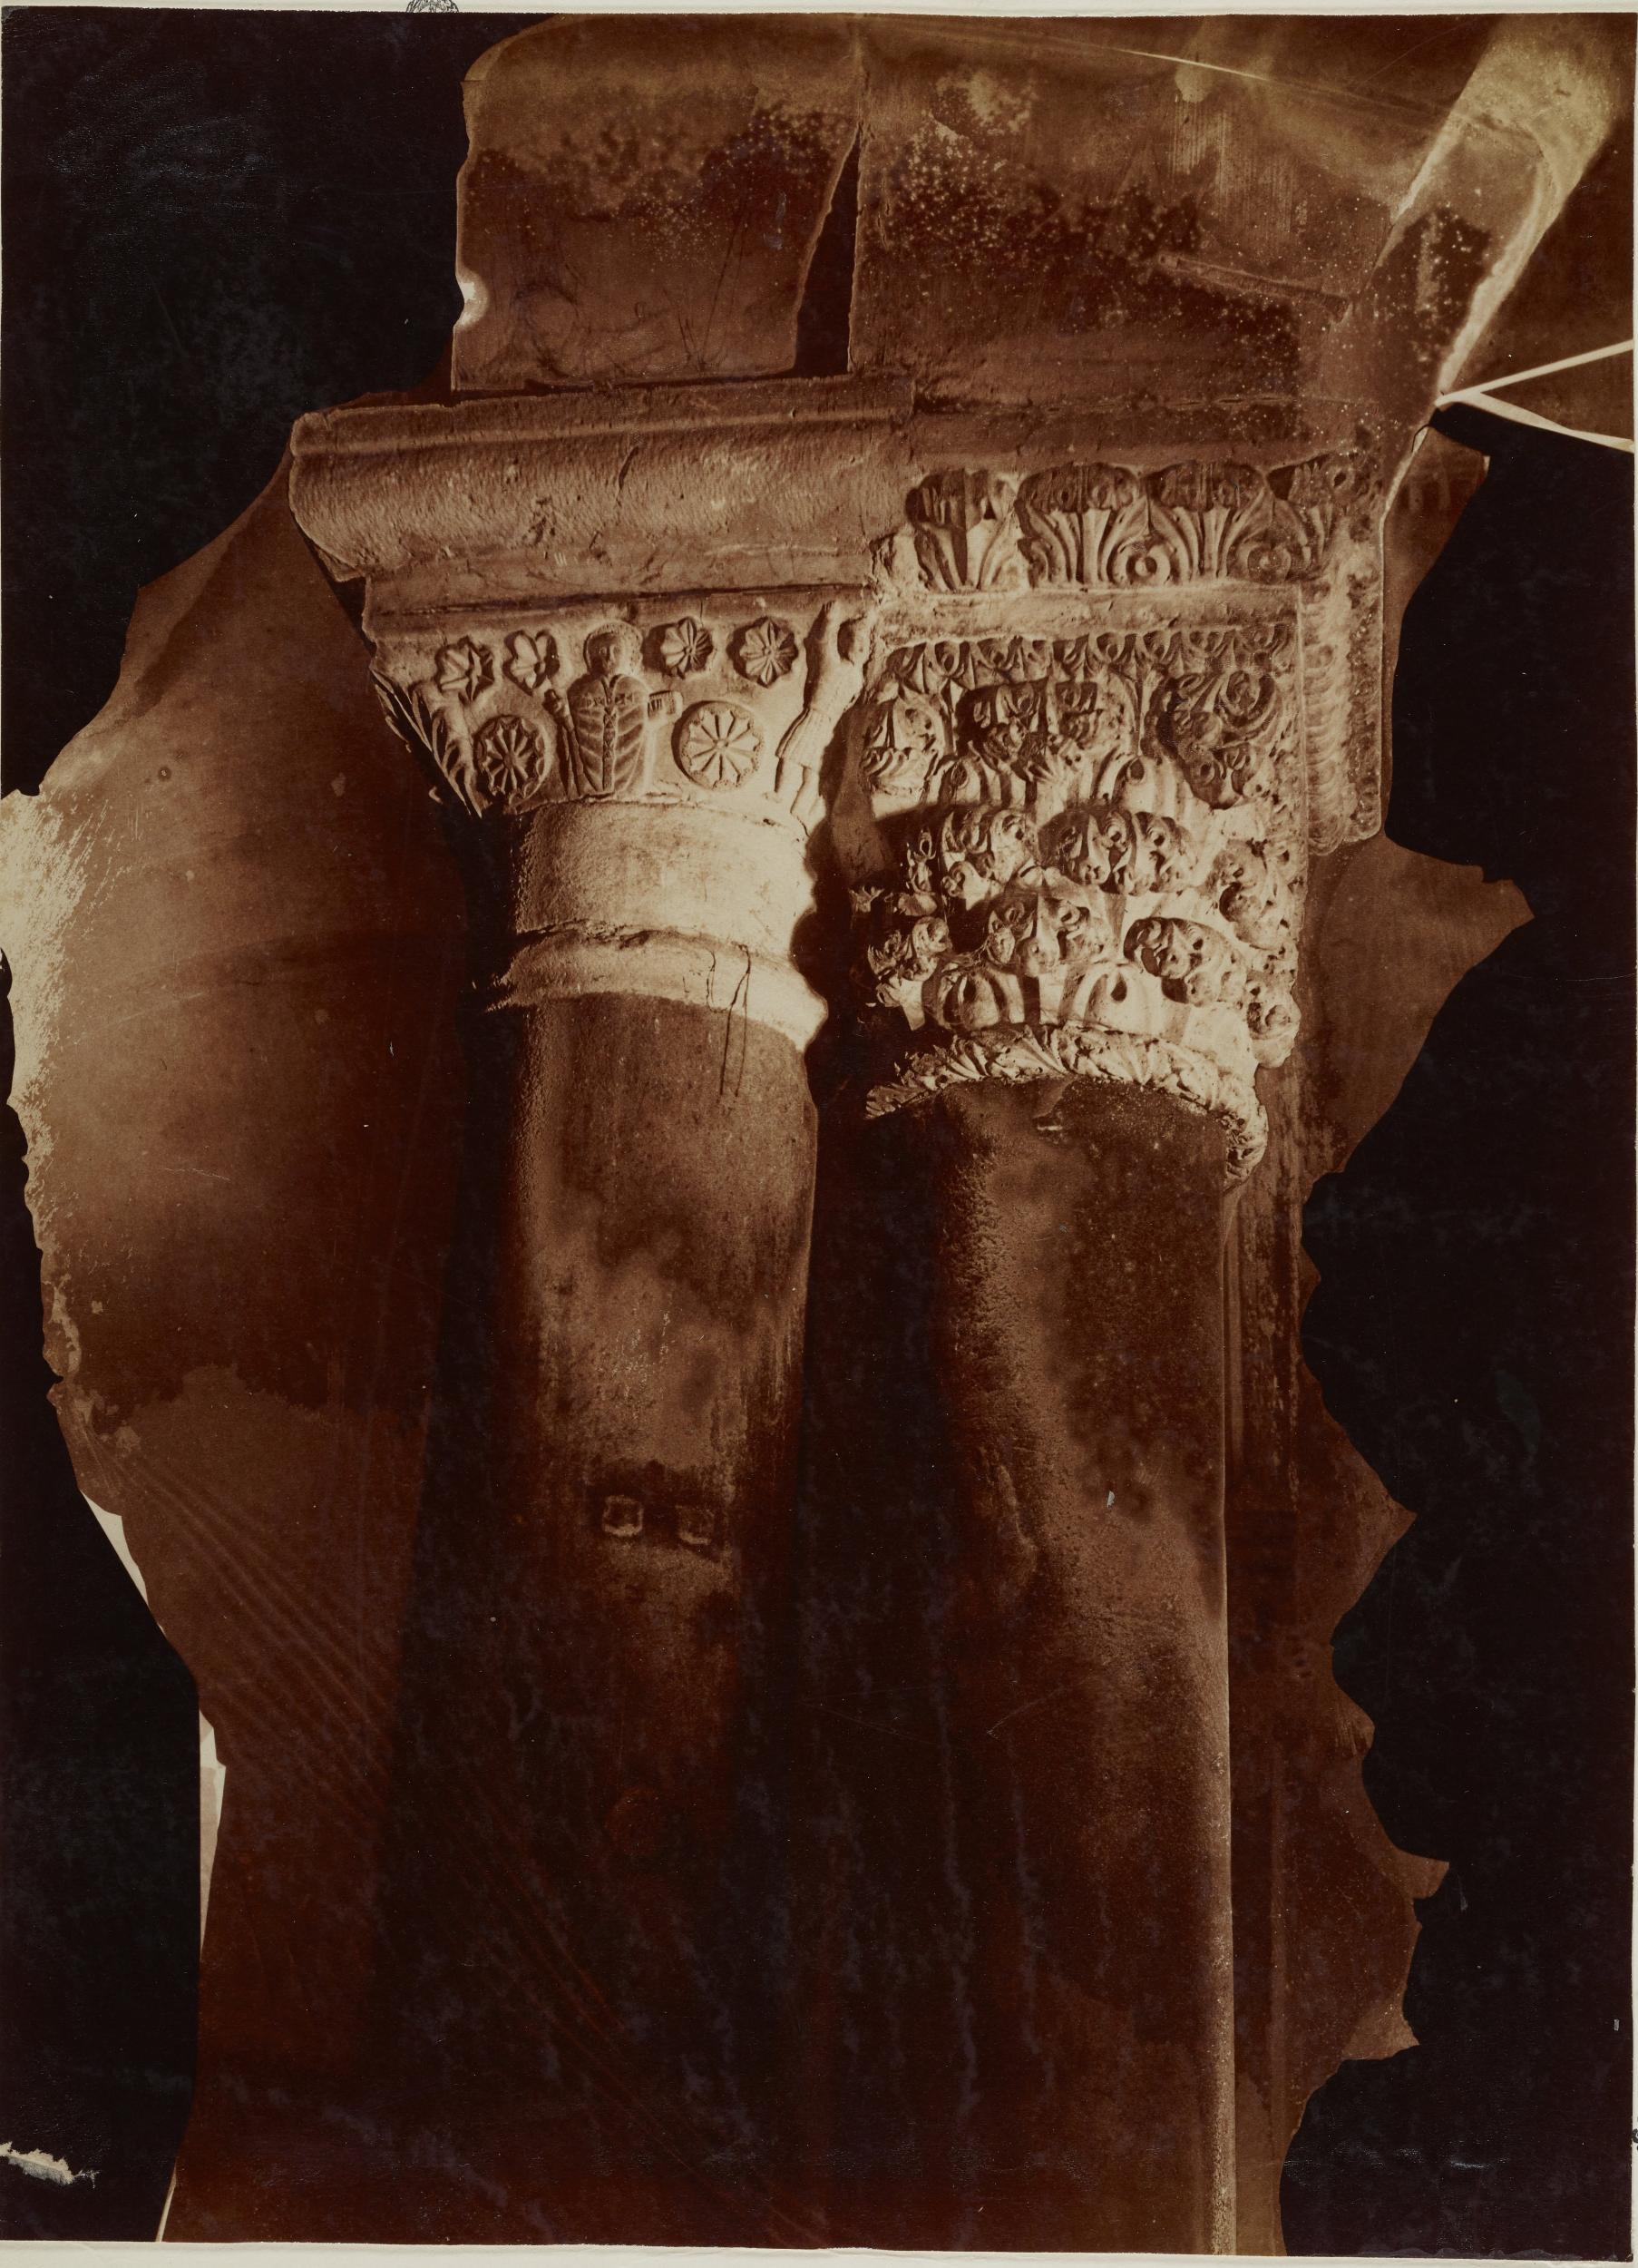 Fotografo non identificato, Bari - Basilica di S. Nicola, colonne binate e capitelli nella navata centrale, 1876-1900, carbone, MPI136806